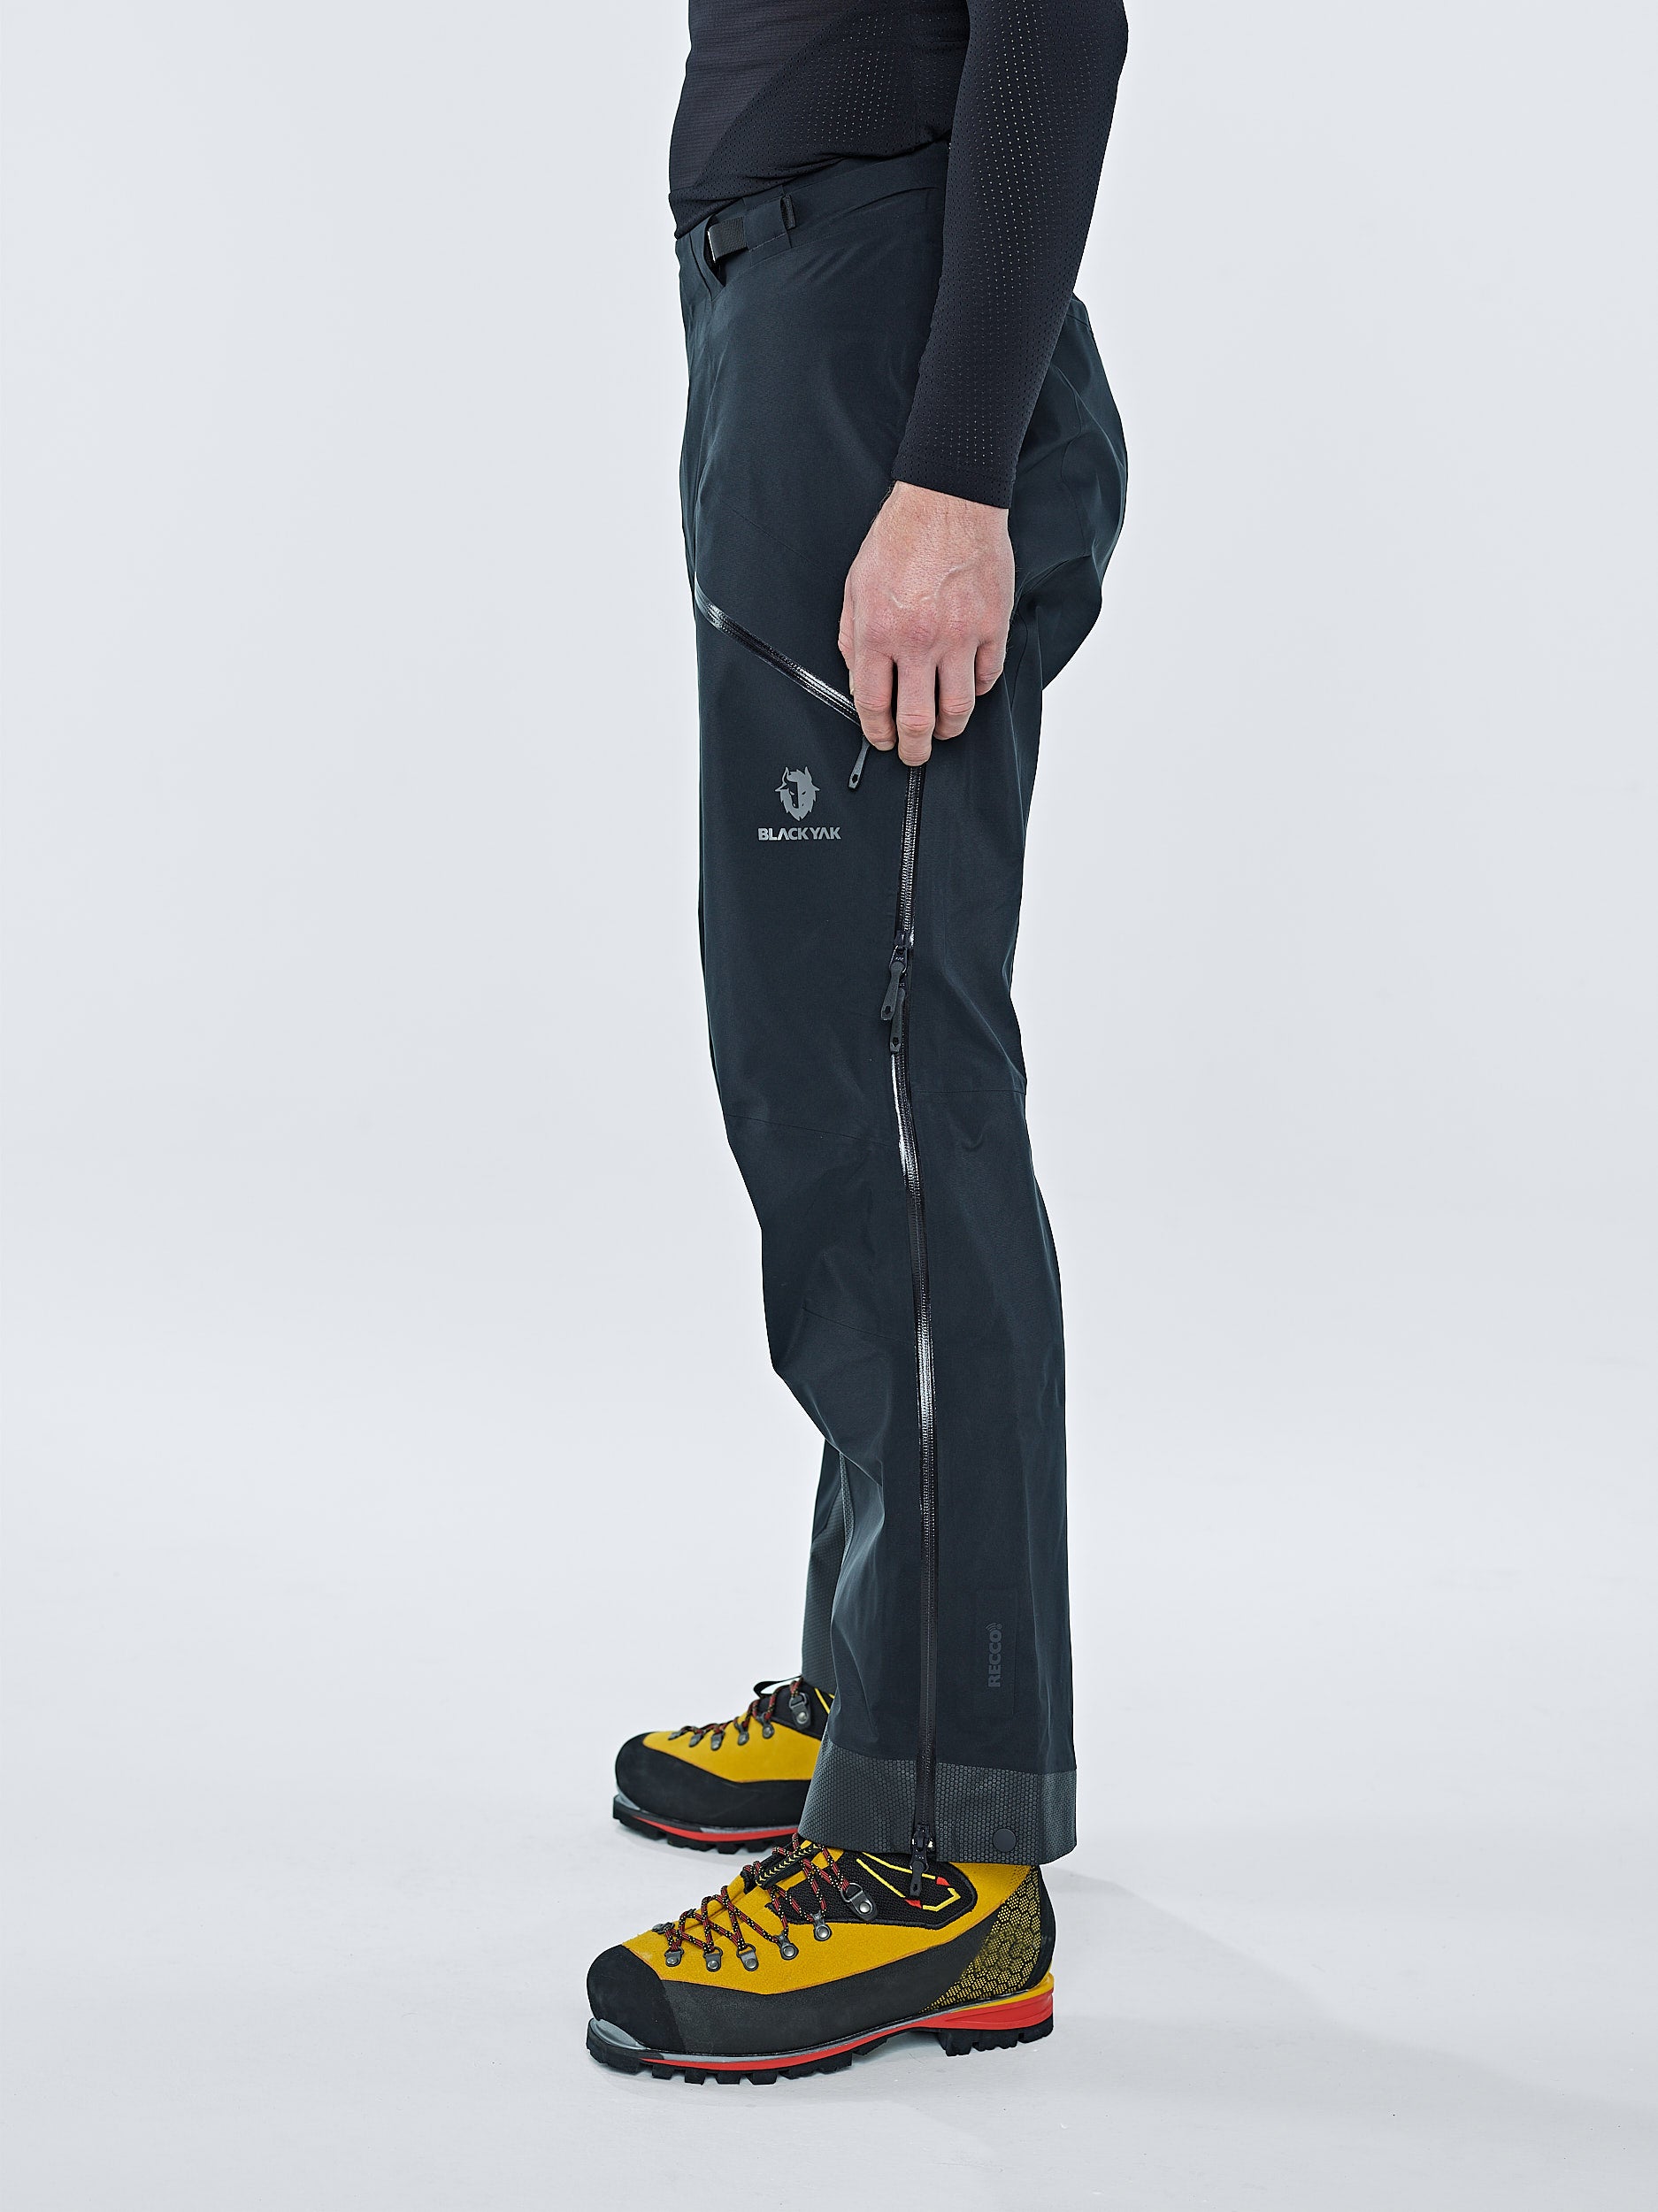 Black Yak GORE-TEX Pro Shell 3L Pants - Waterproof Trousers Men's | Buy  online | Alpinetrek.co.uk